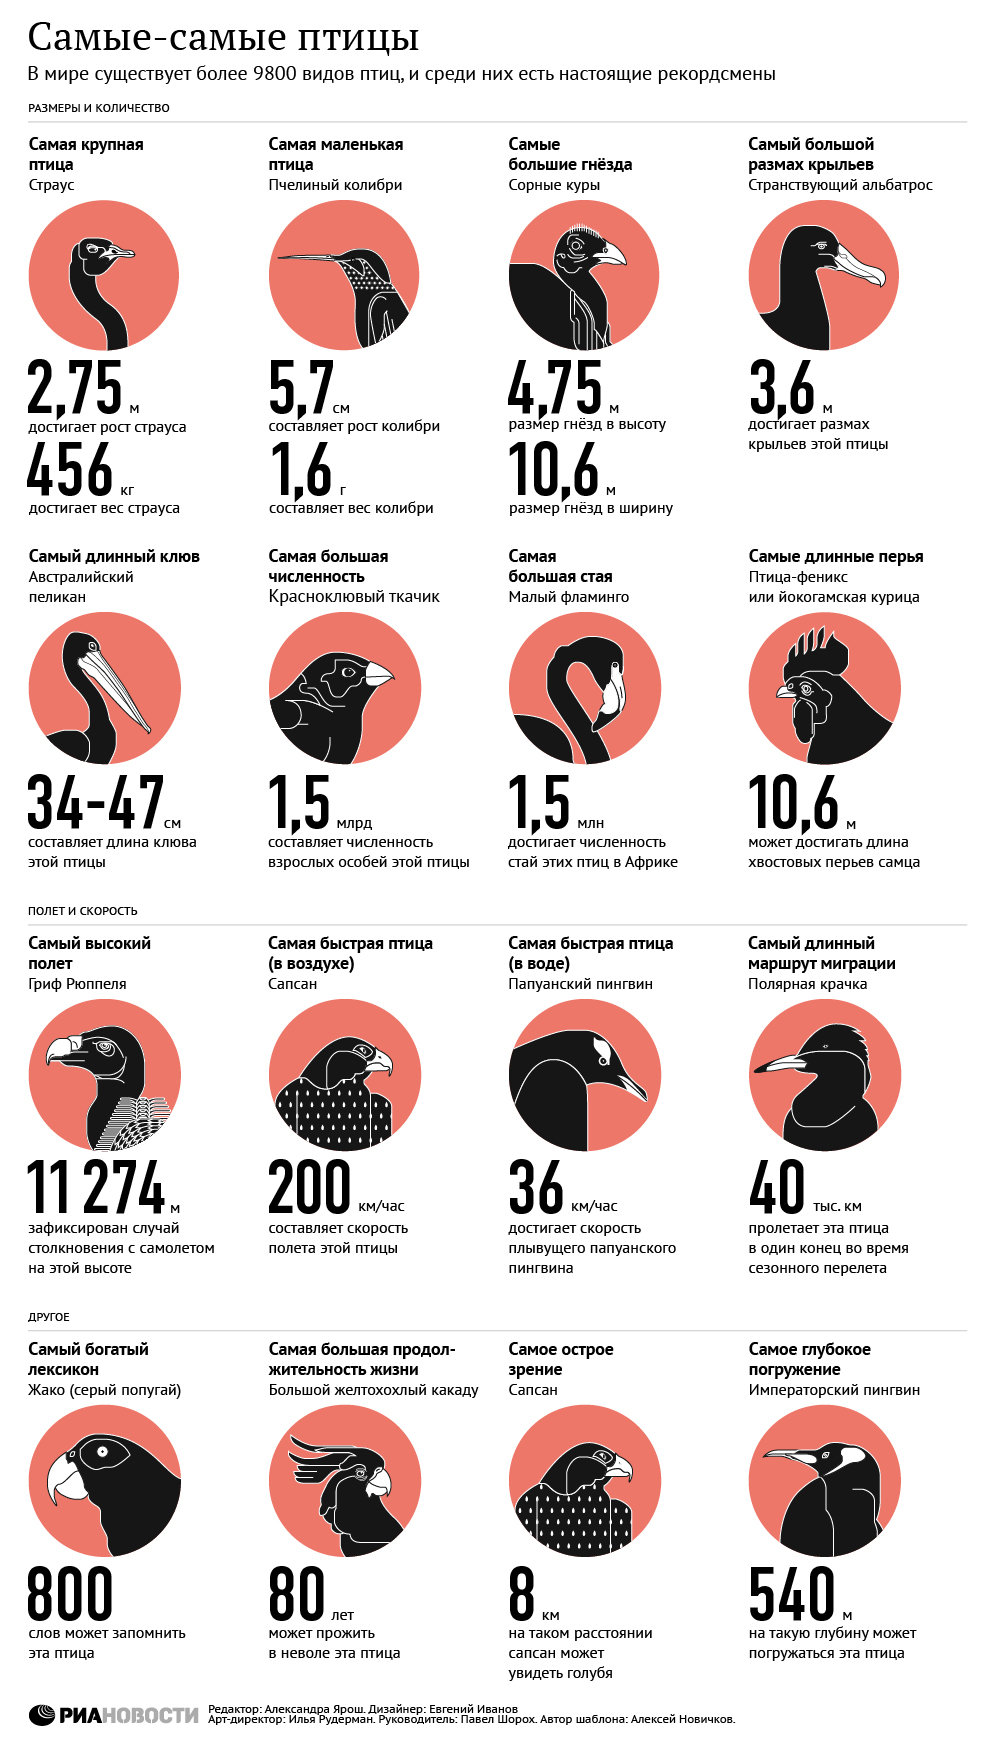 Самые самые птицы: все о пернатых рекордсменах